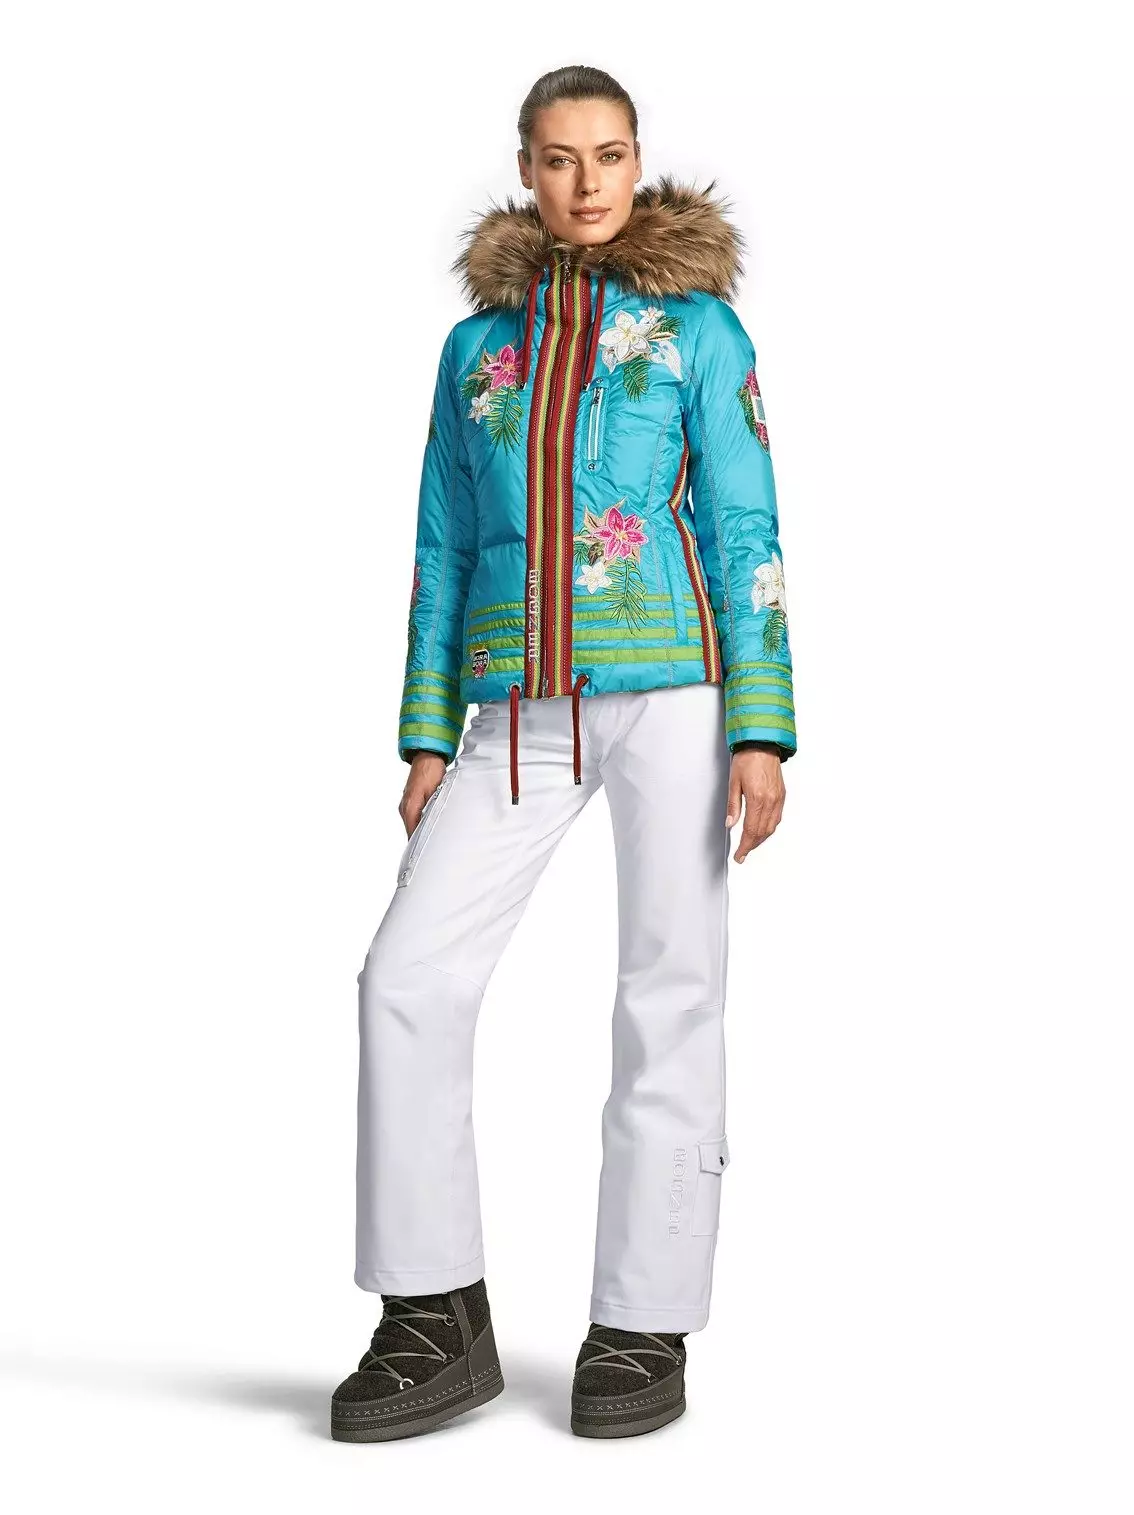 Ski-kostuums (90 foto's): Ski-modellen voor vrouwen, hoe te kiezen 14837_56